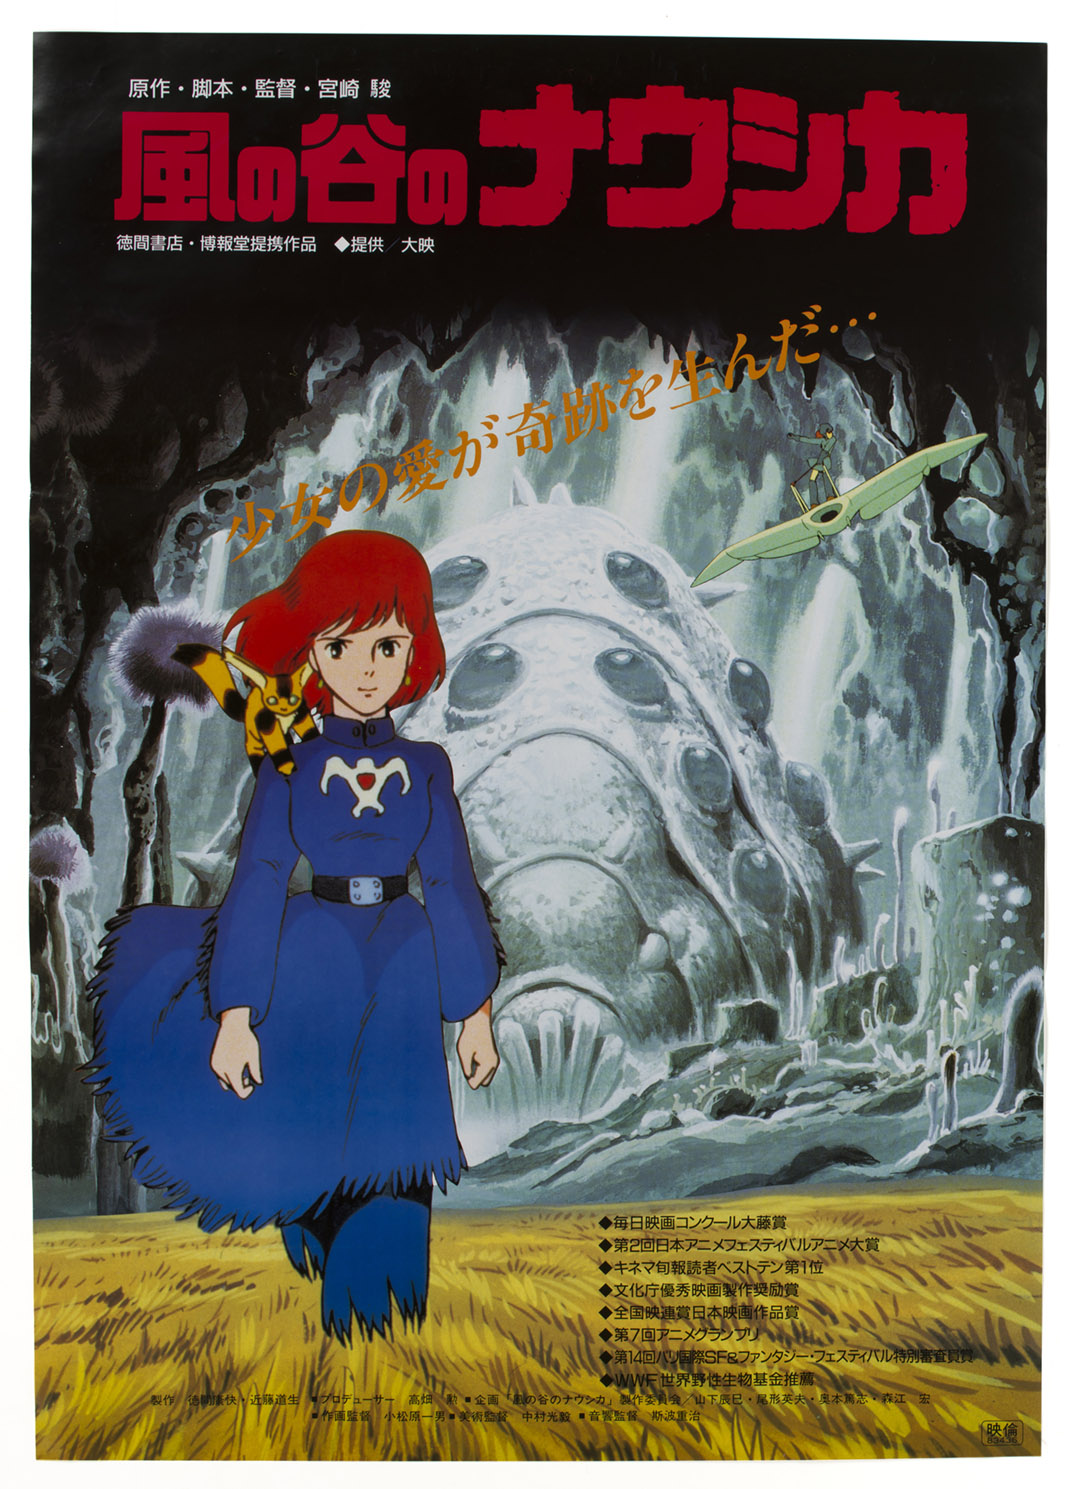 二次配給時の映画ポスター「風の谷のナウシカ」&copy; 1984 Studio Ghibli・H